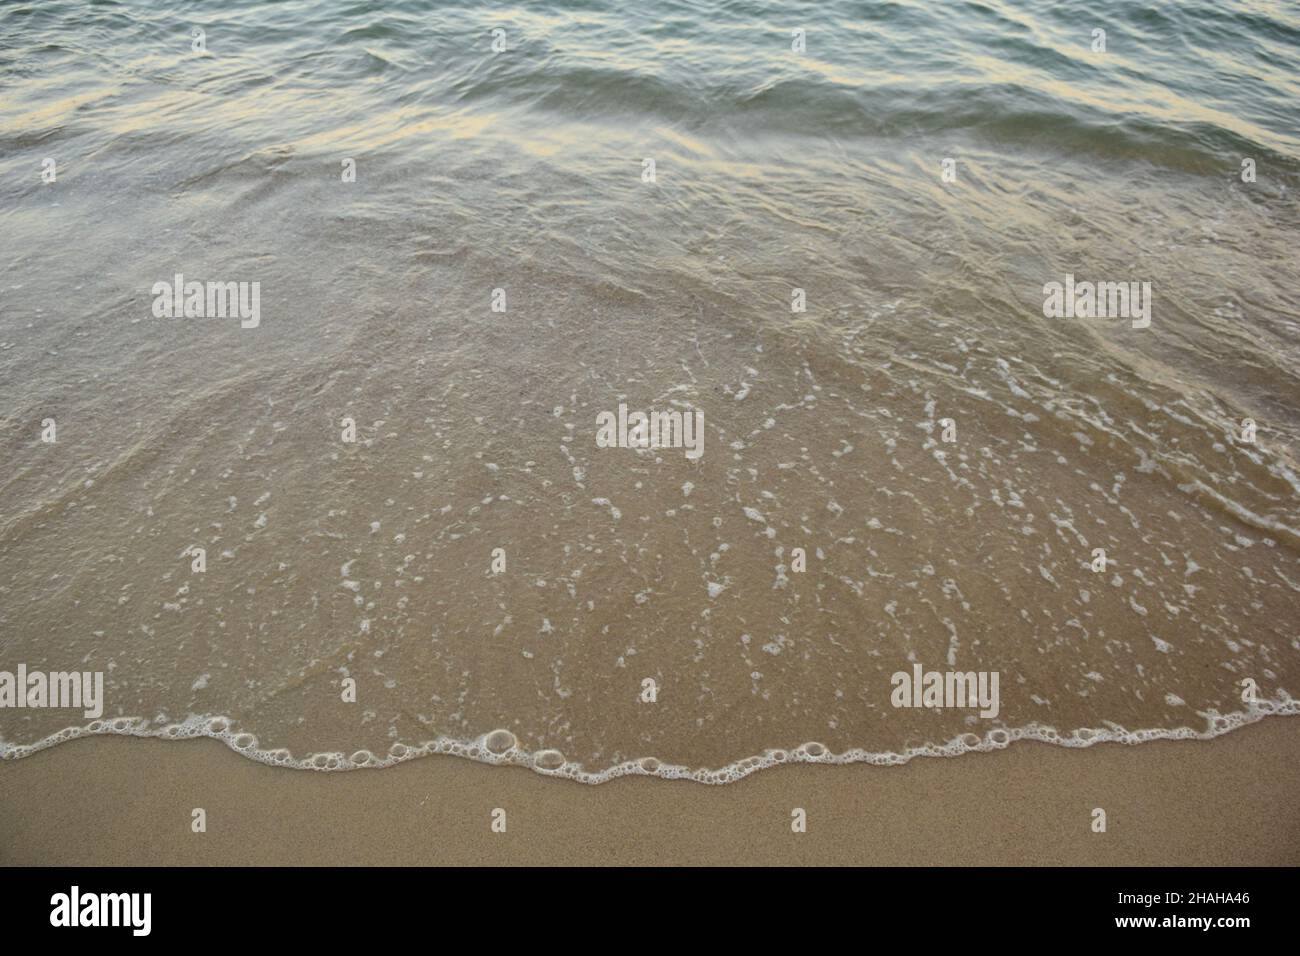 Una piccola onda di mare scorre sulla spiaggia sabbiosa con acqua trasparente e un bordo schiumoso. Fotografato dall'alto Foto Stock